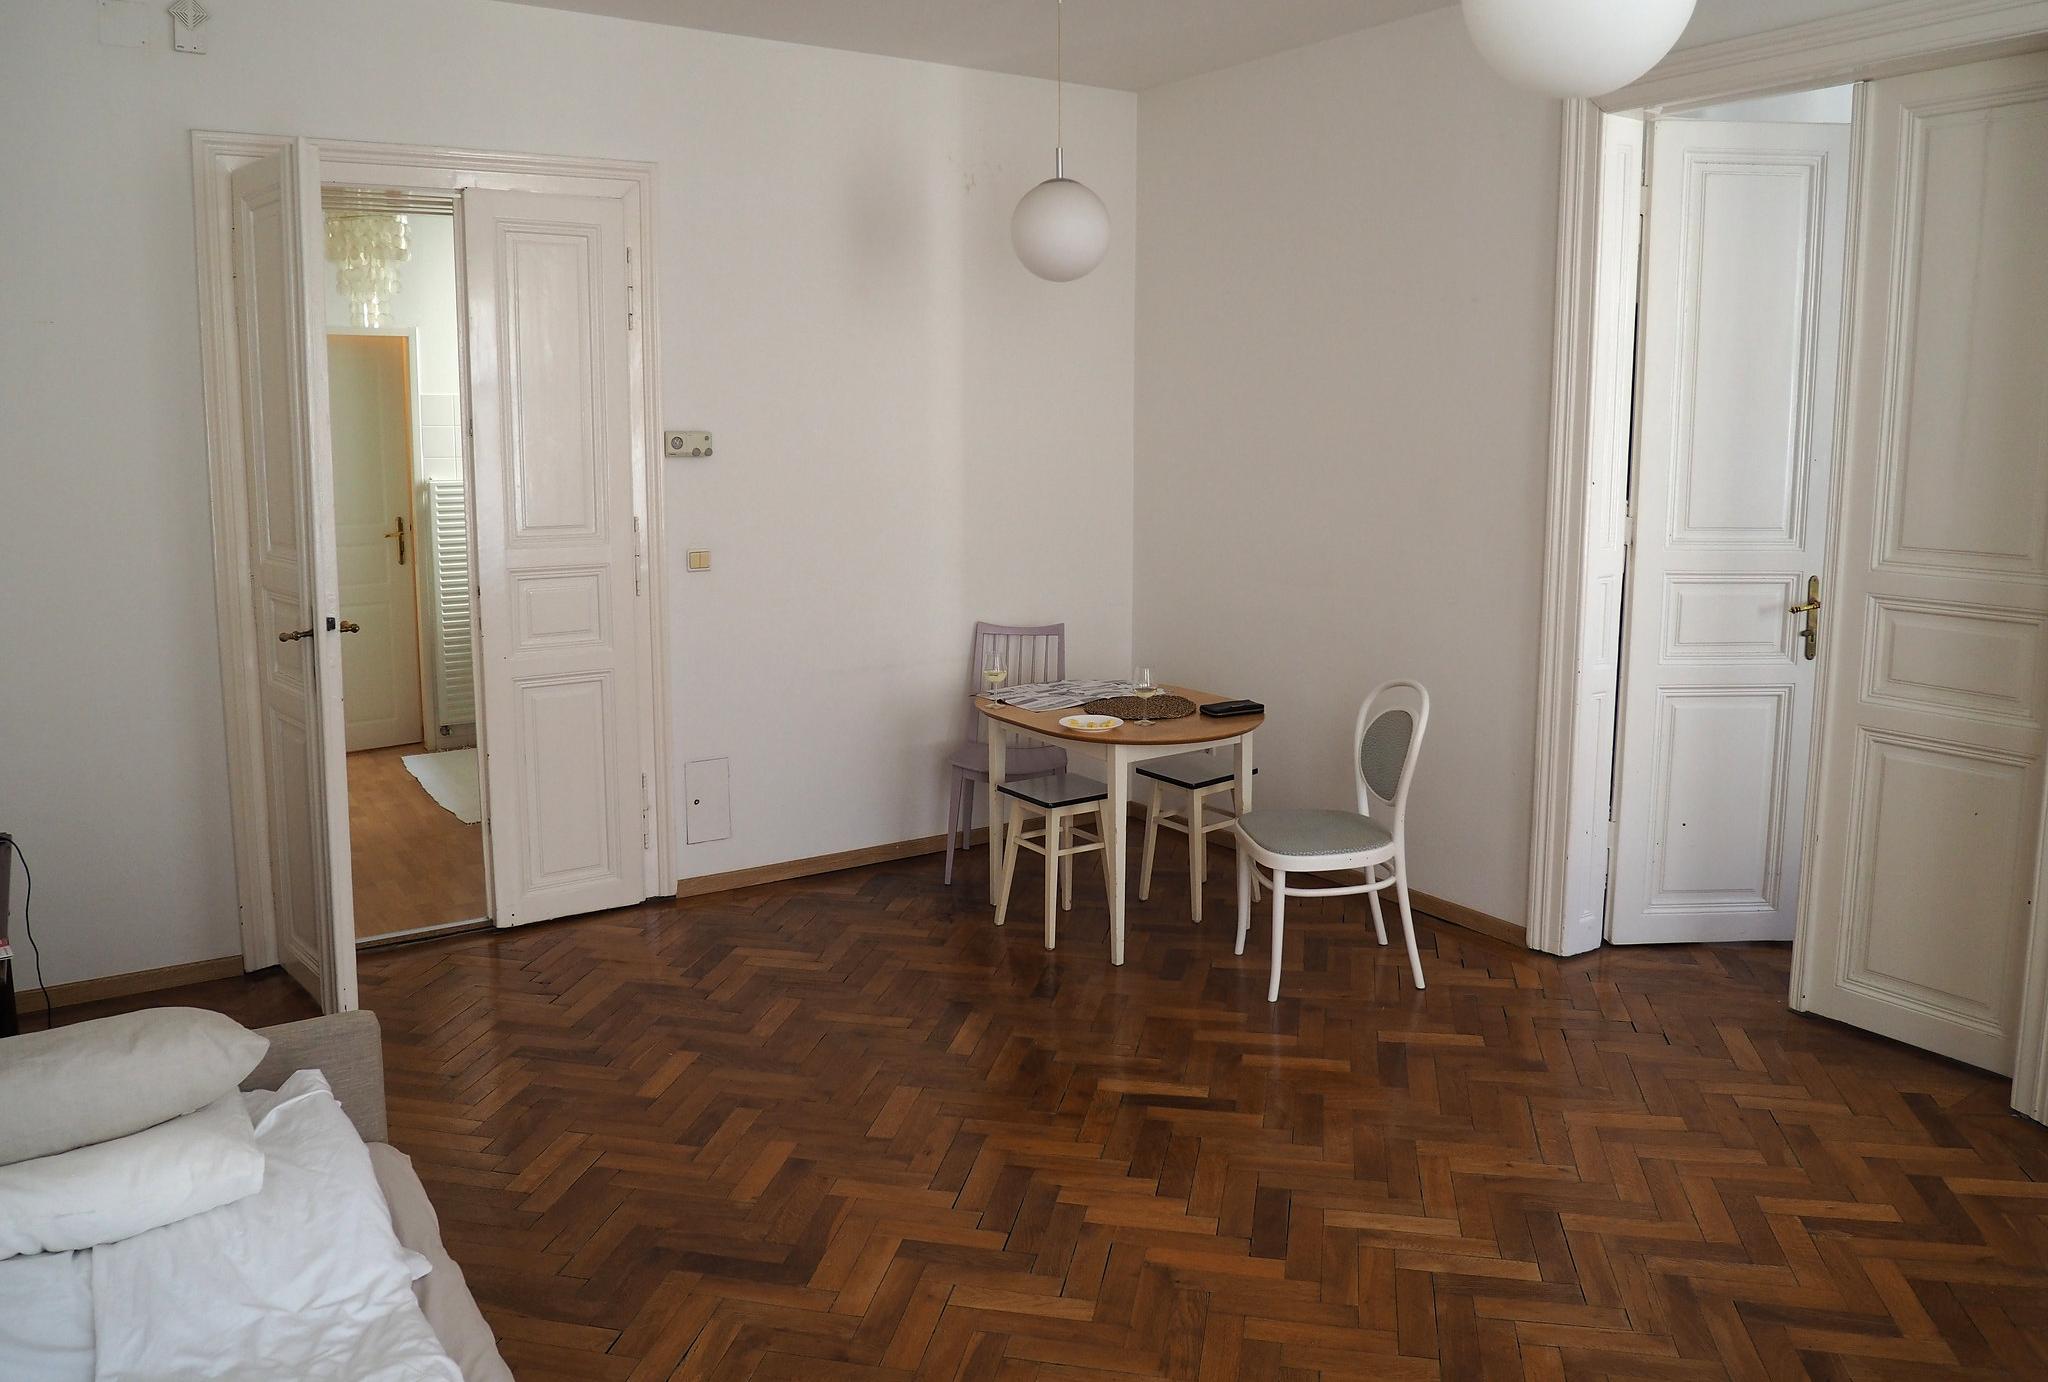 Airbnb-Wohnungen wie diese in Wien blieben während der Corona-Pandemie leer.